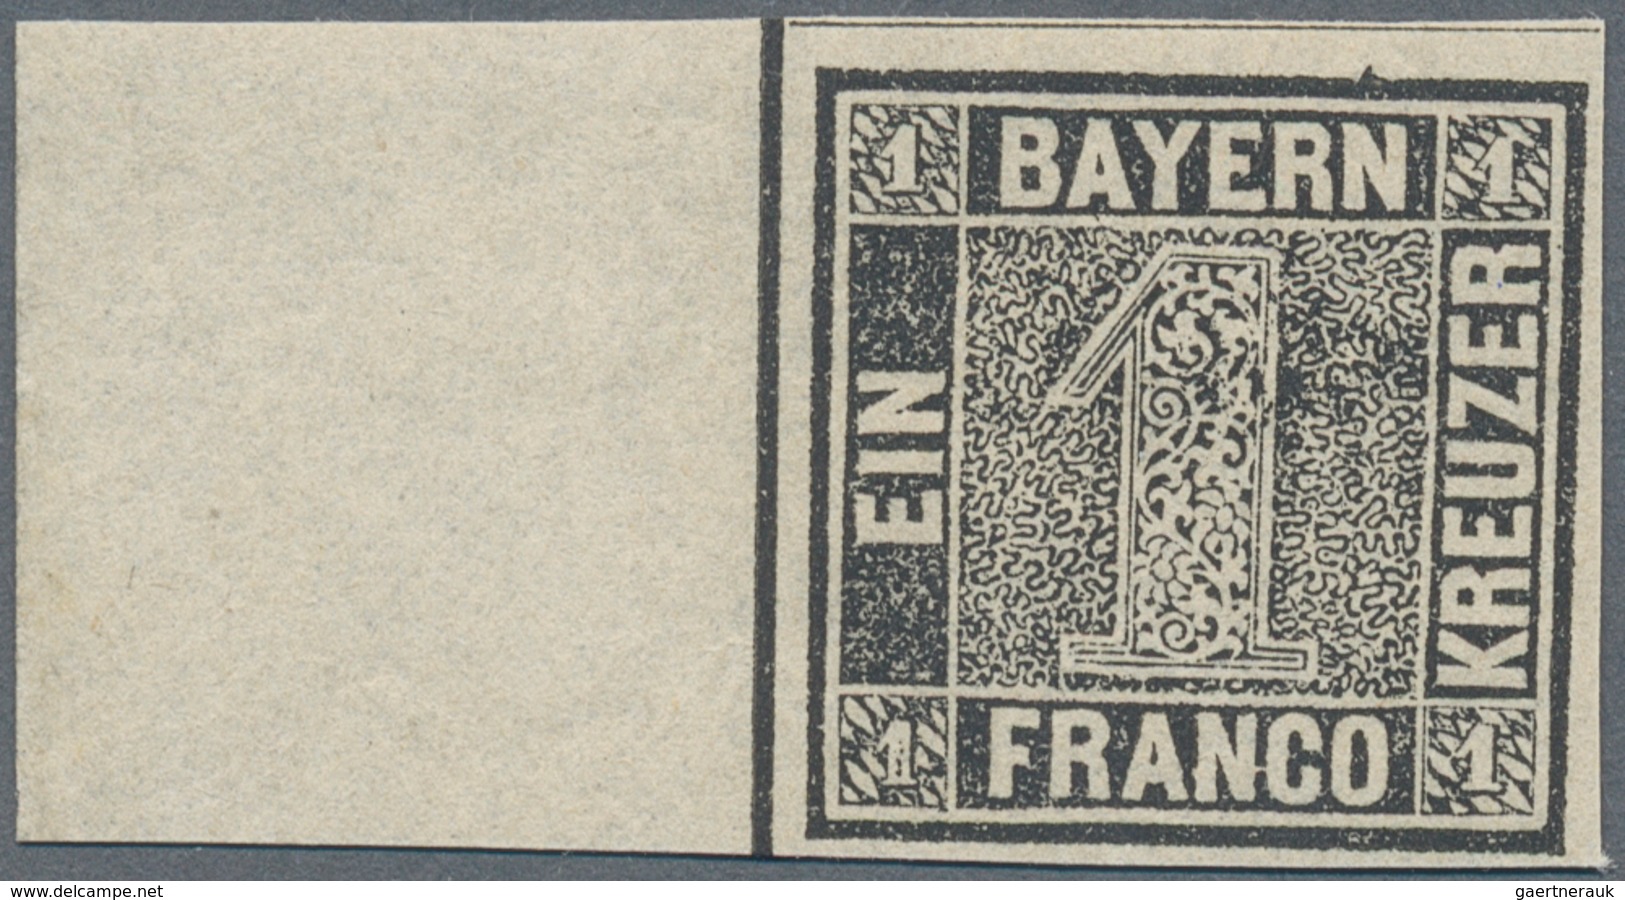 Bayern - Marken Und Briefe: 1849, 1 Kreuzer Schwarz, Platte 1, Mit 19 Mm Bogenrand Links, Ungebrauch - Sonstige & Ohne Zuordnung